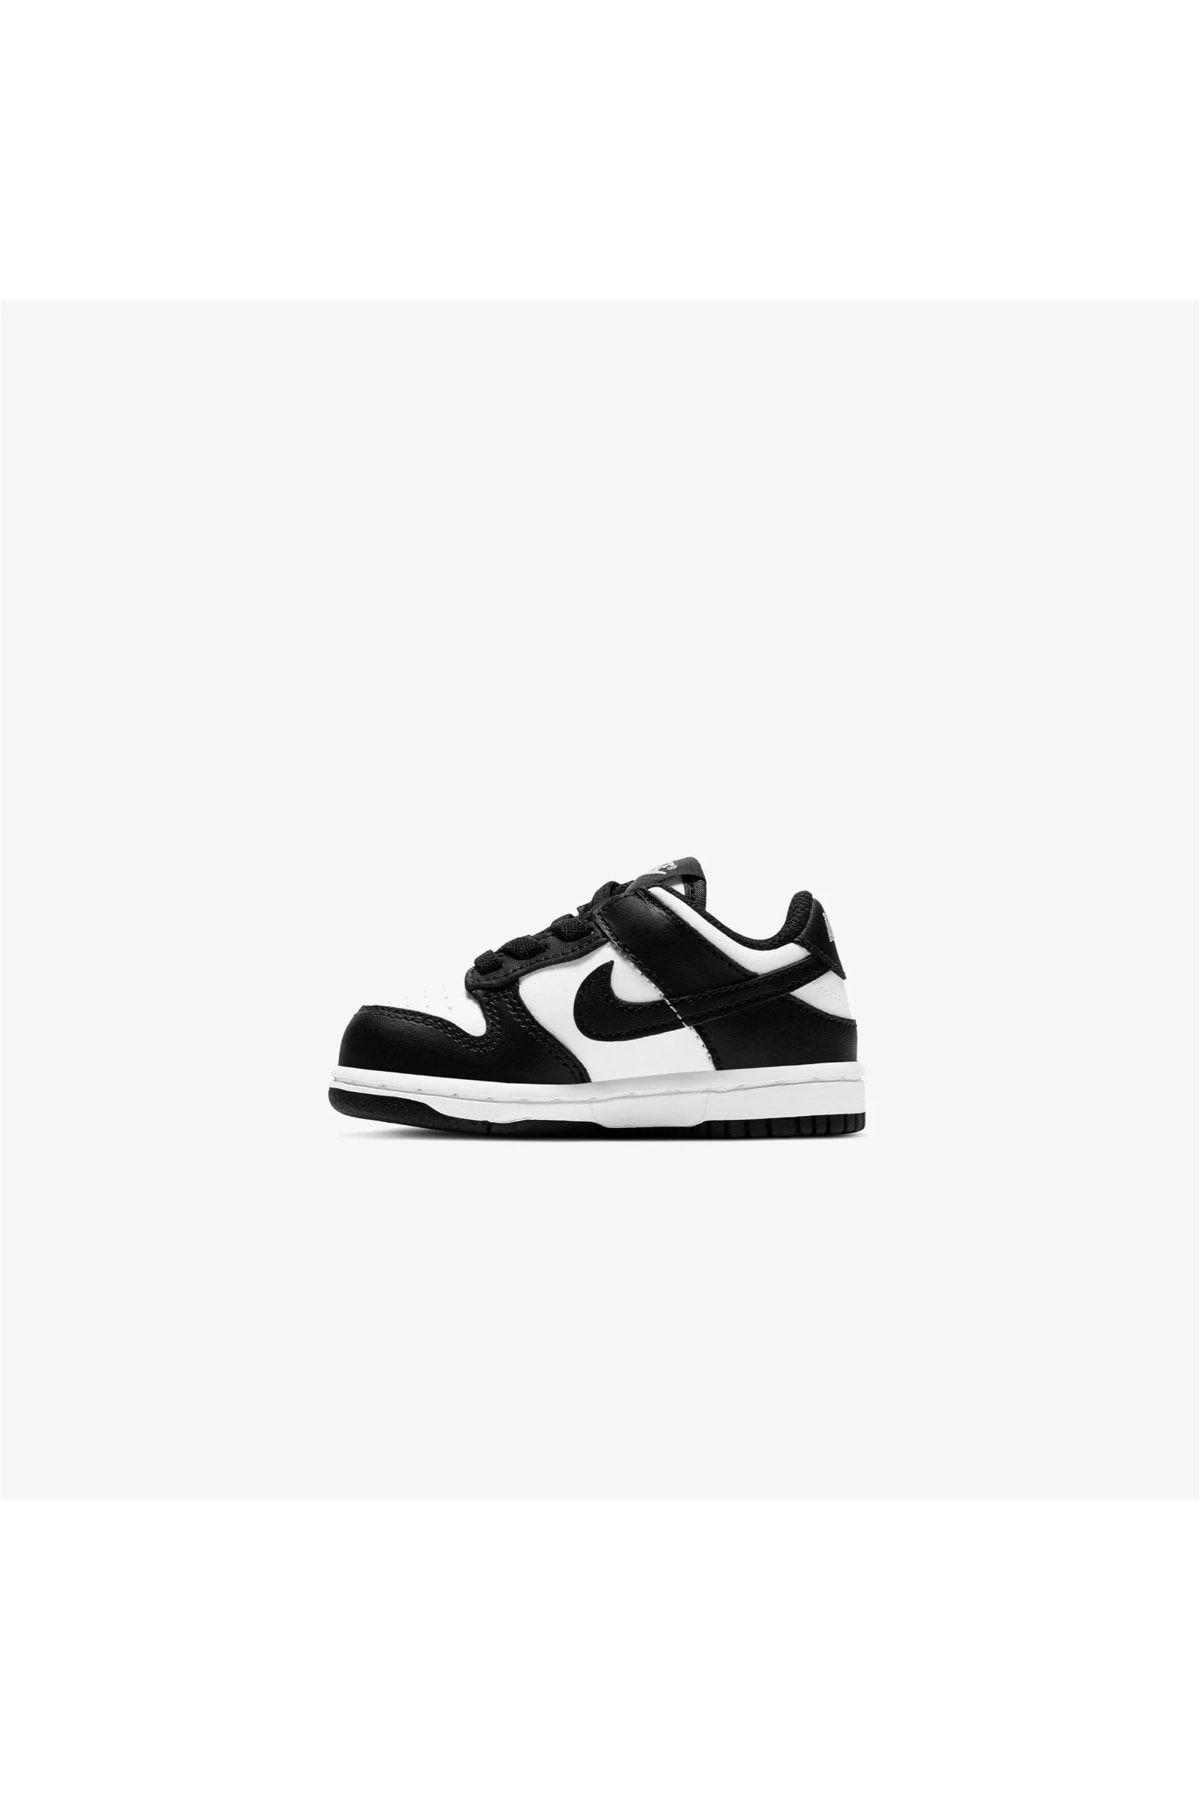 Nike Dunk Low Td Çocuk Siyah-beyaz Spor Ayakkabı ''panda''